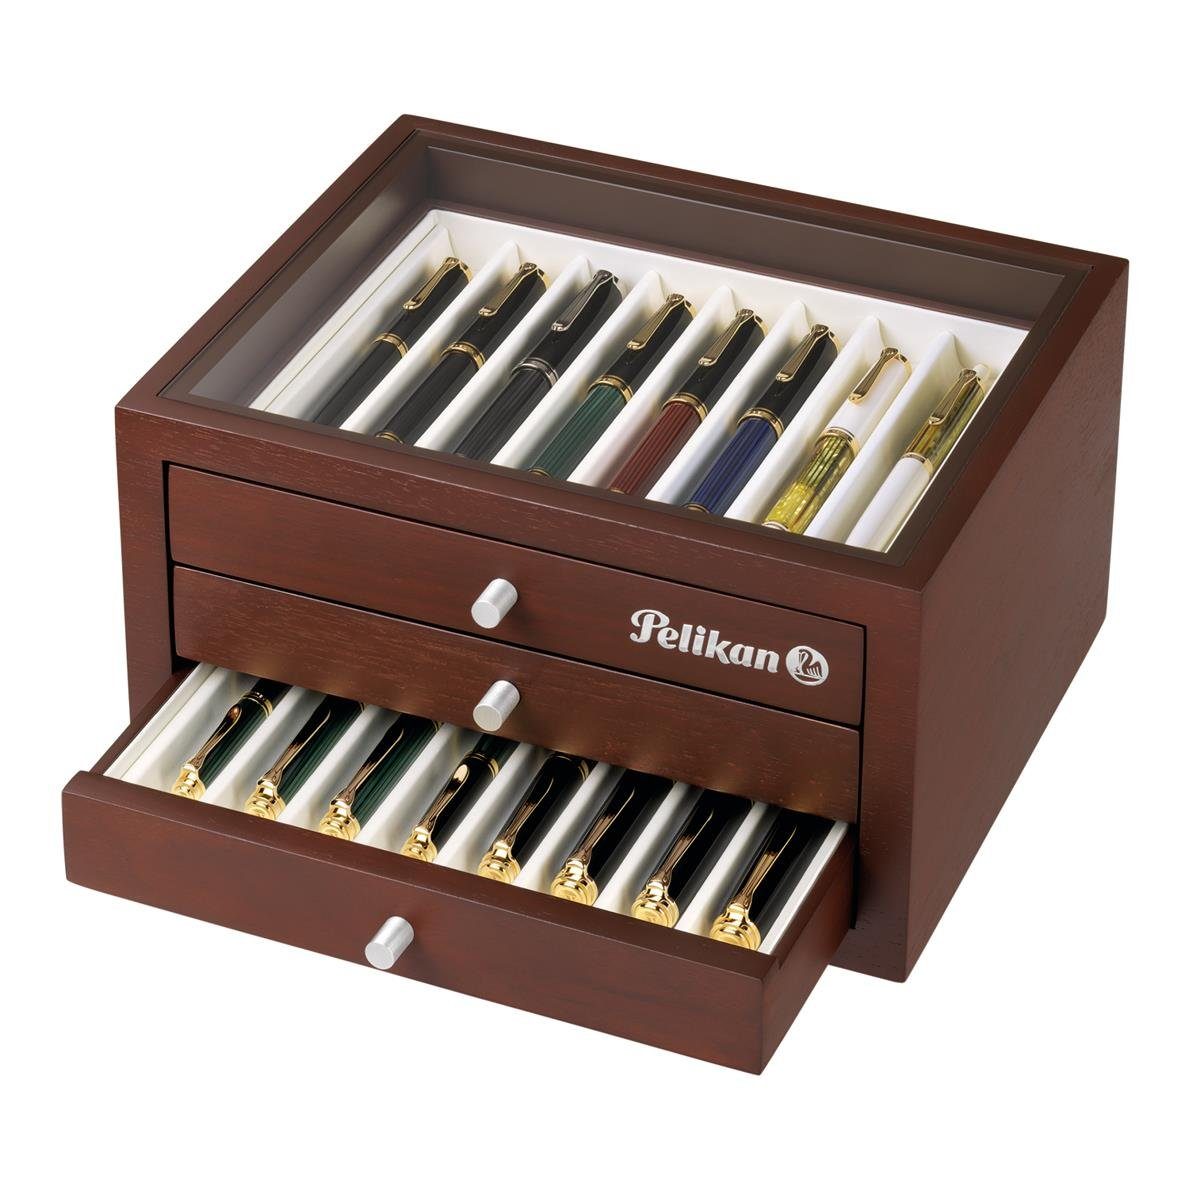 Pelikan Zeichenkohle Pelikan Sammlerbox für 24 hochwertige Schreibgeräte